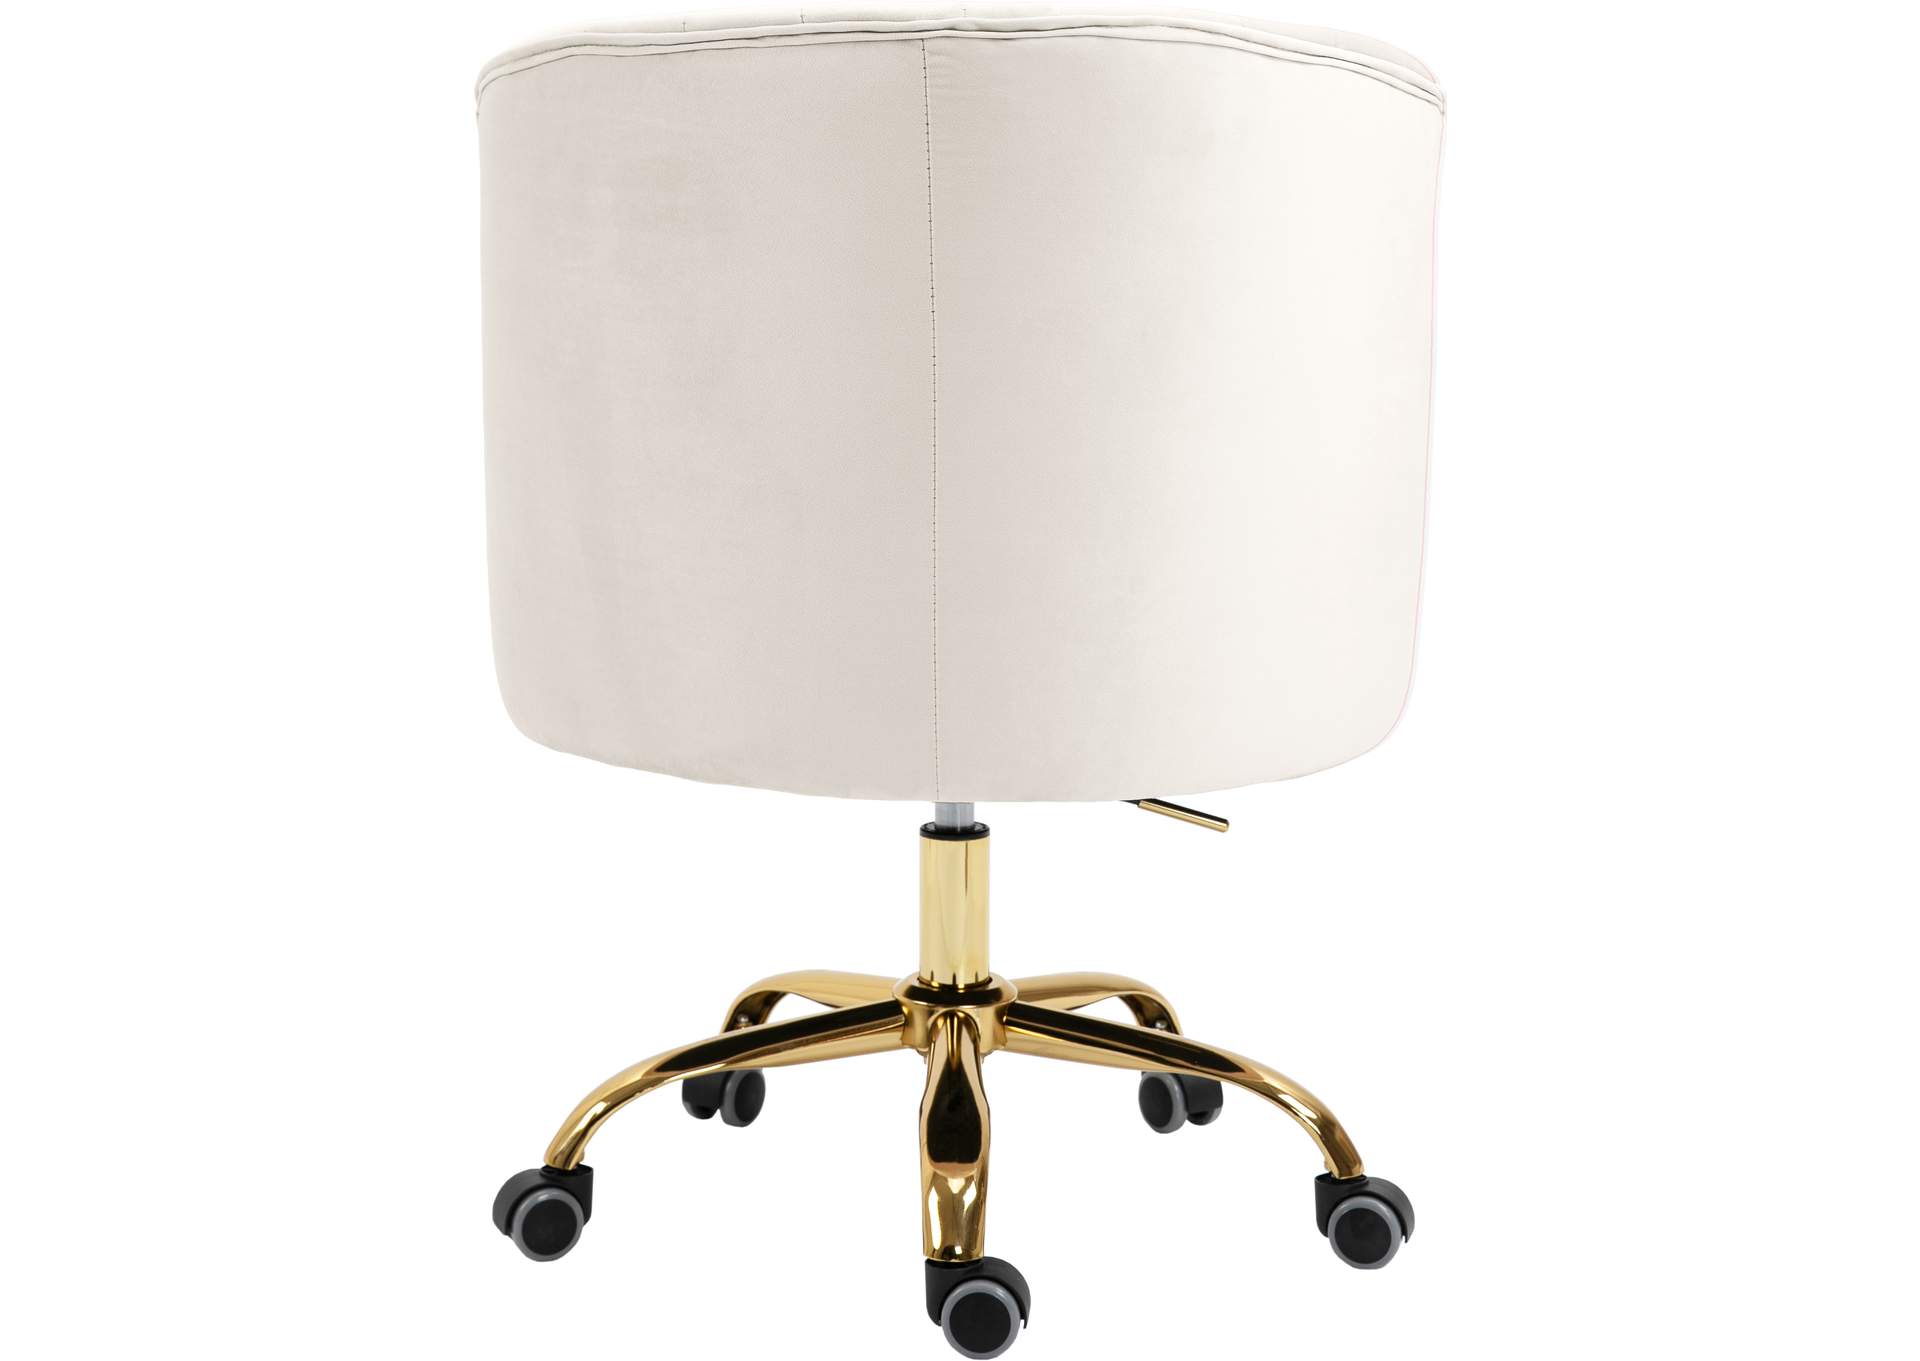 Arden Cream Velvet Office Chair,Meridian Furniture